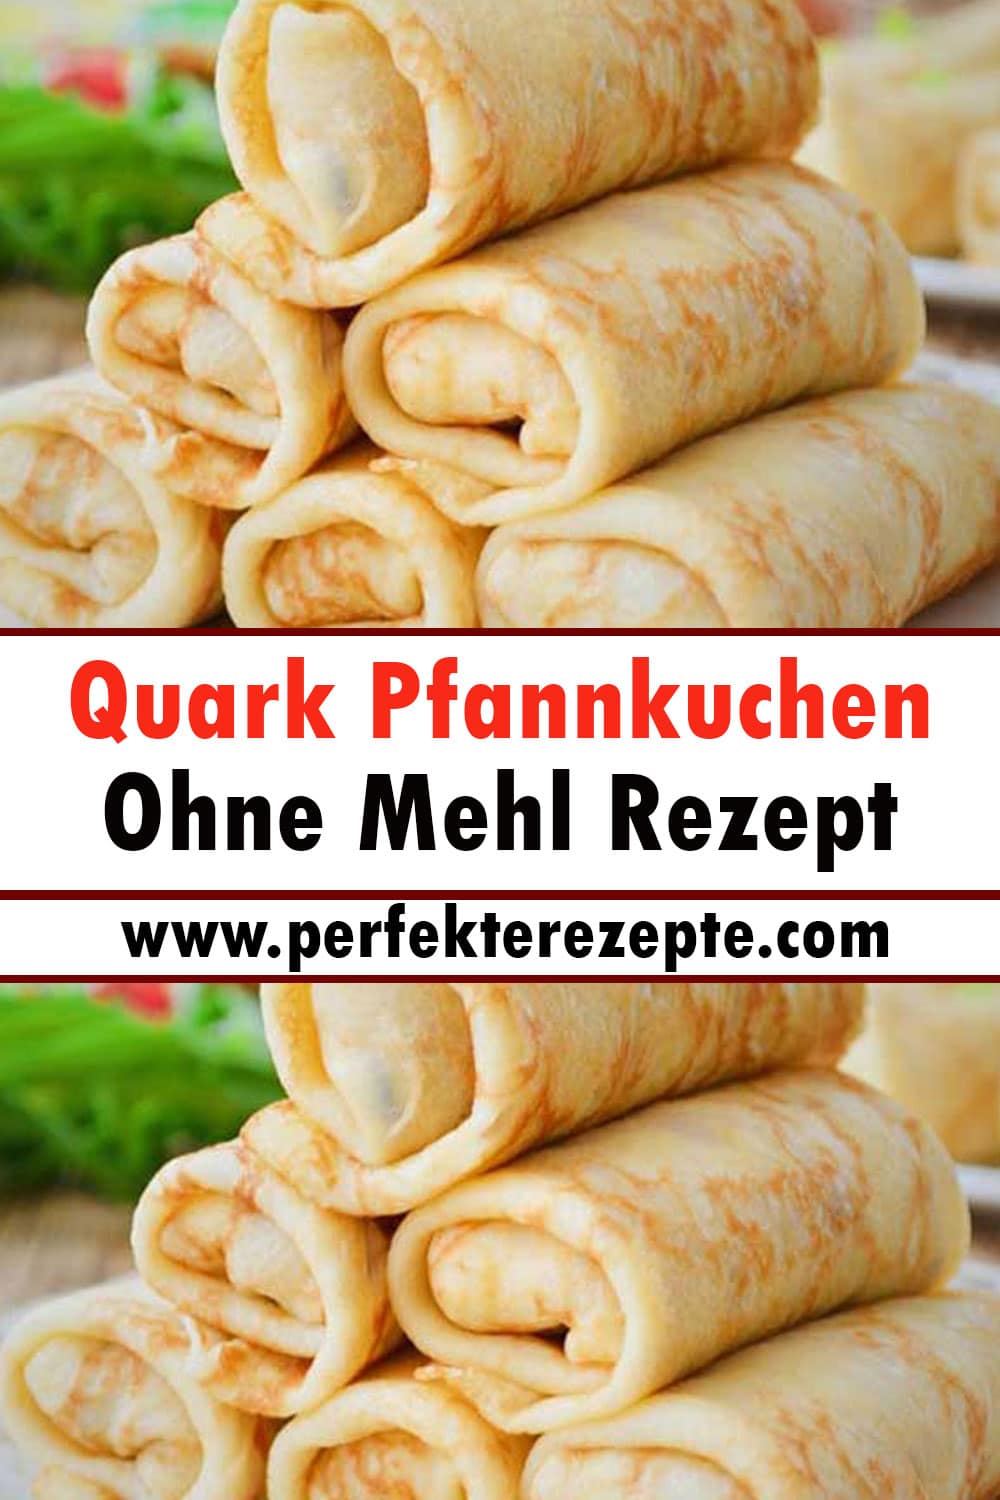 Quark Pfannkuchen Ohne Mehl Rezept